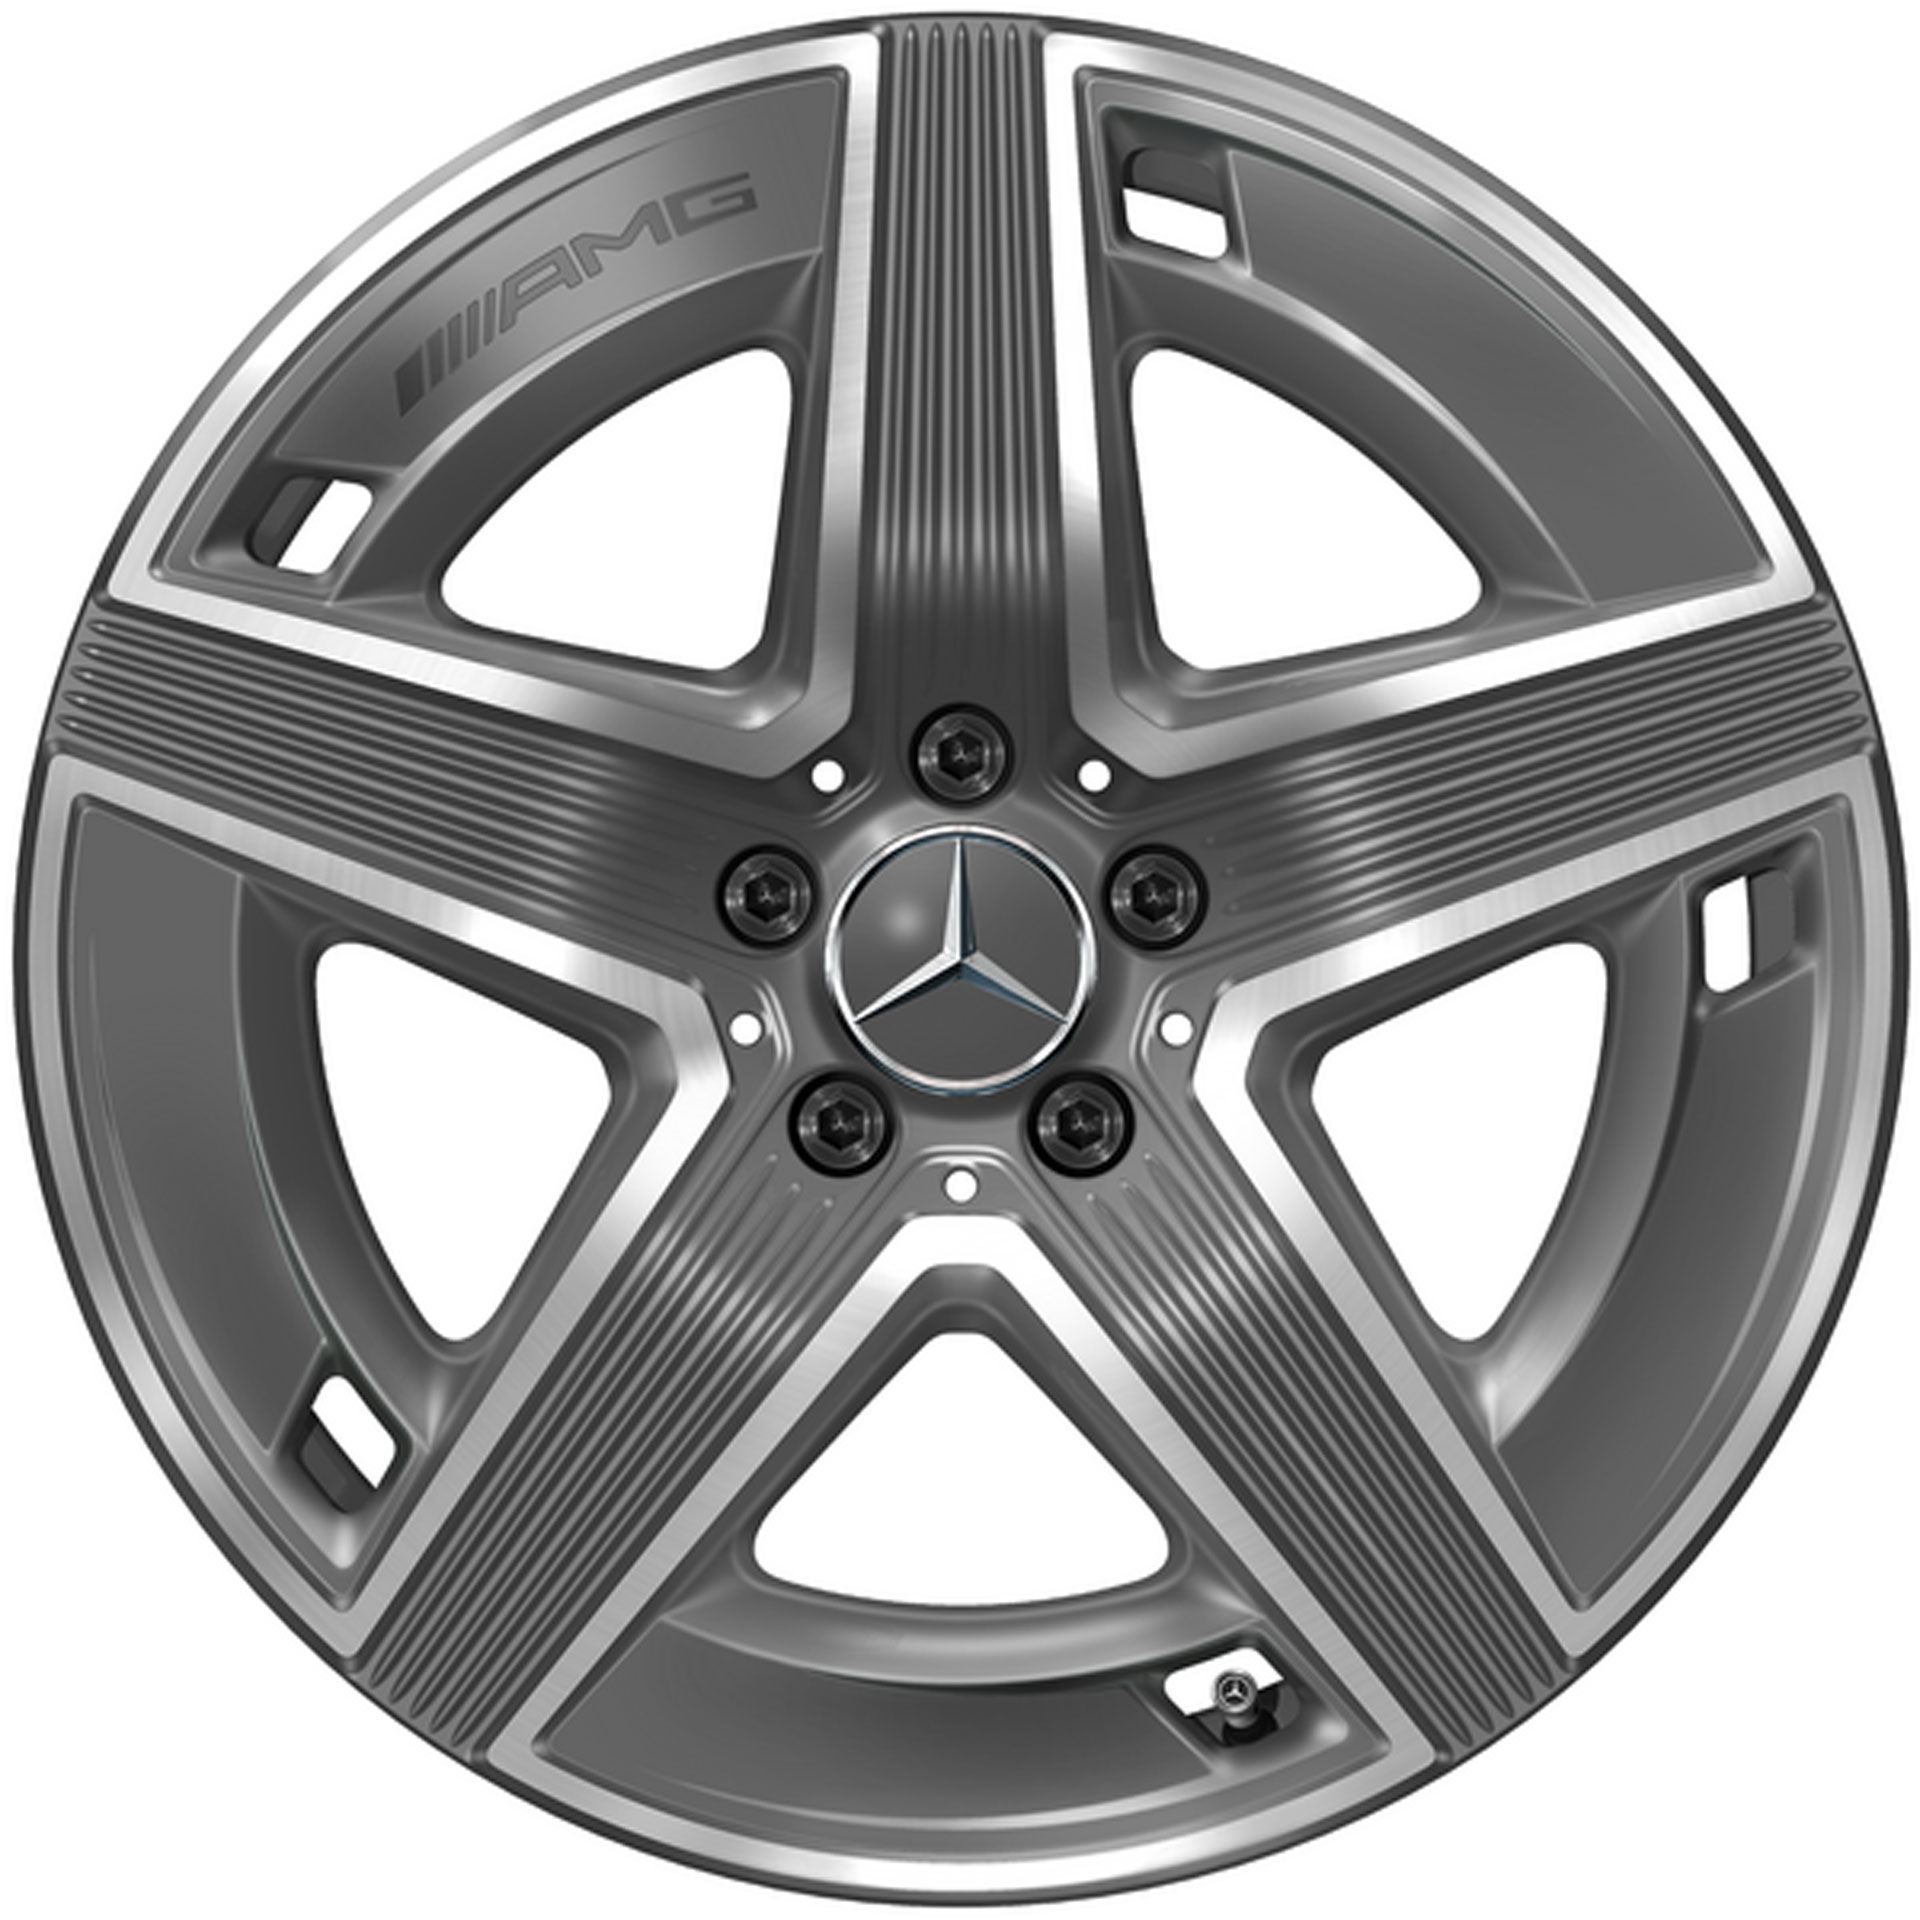 Mercedes-AMG 5-Speichen-Rad 19 Zoll Leichtmetallfelge GLC X254 grau glanzgedreht A25440105007Y51